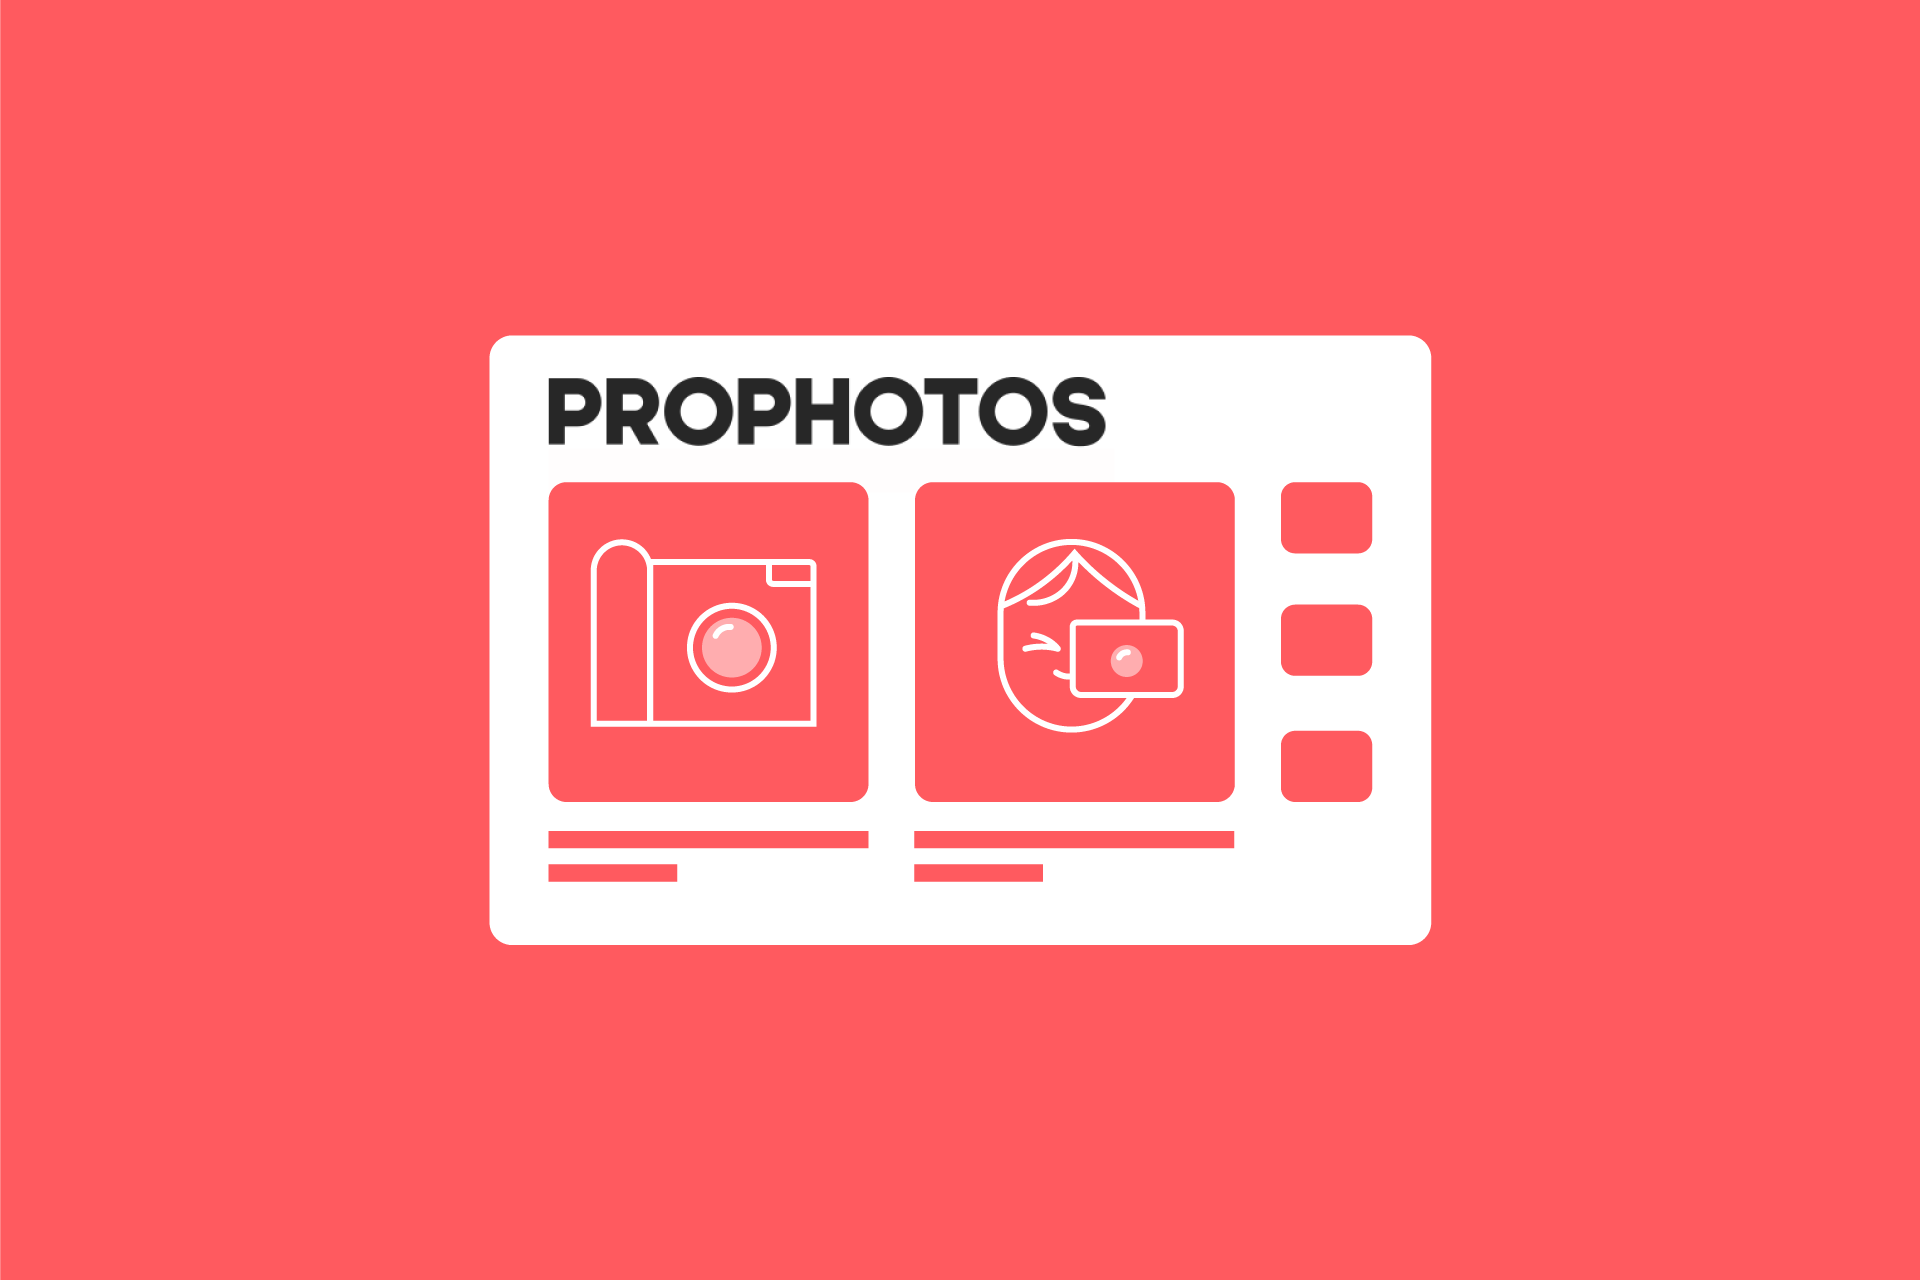 PROPHOTOS журнал. Медиапортал. PROPHOTOS logo. Prophotos